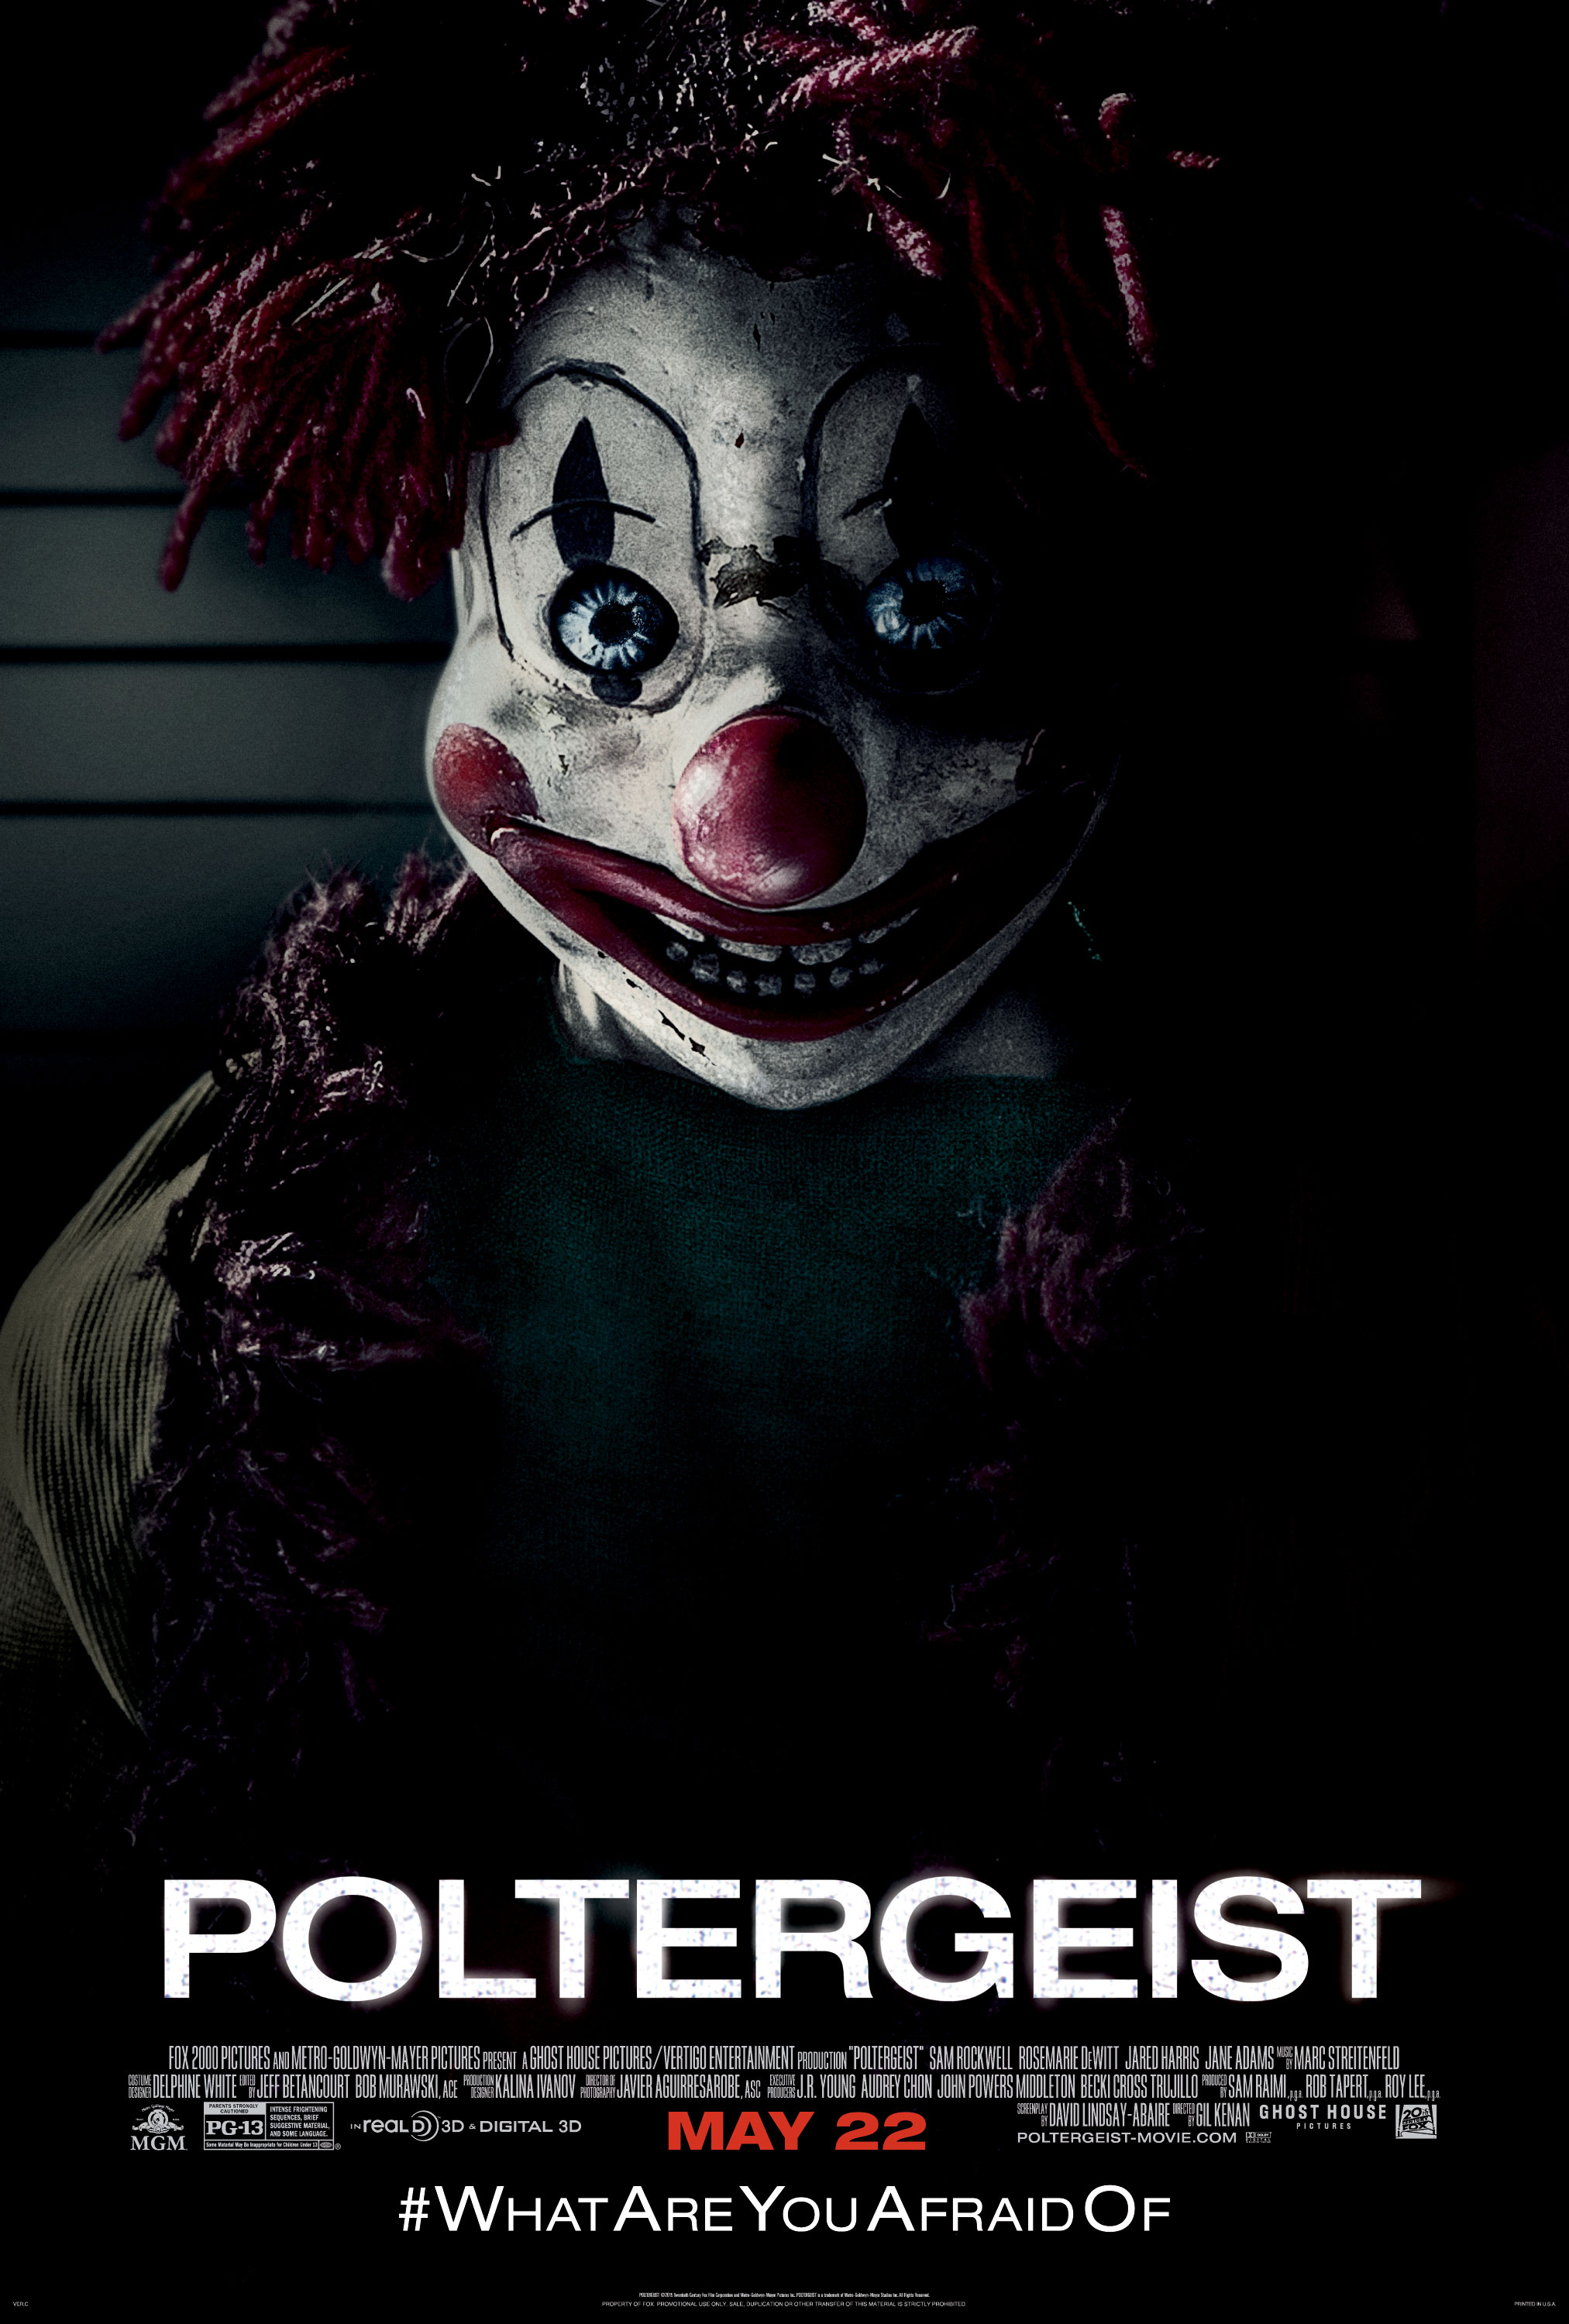 Poltergeist clown